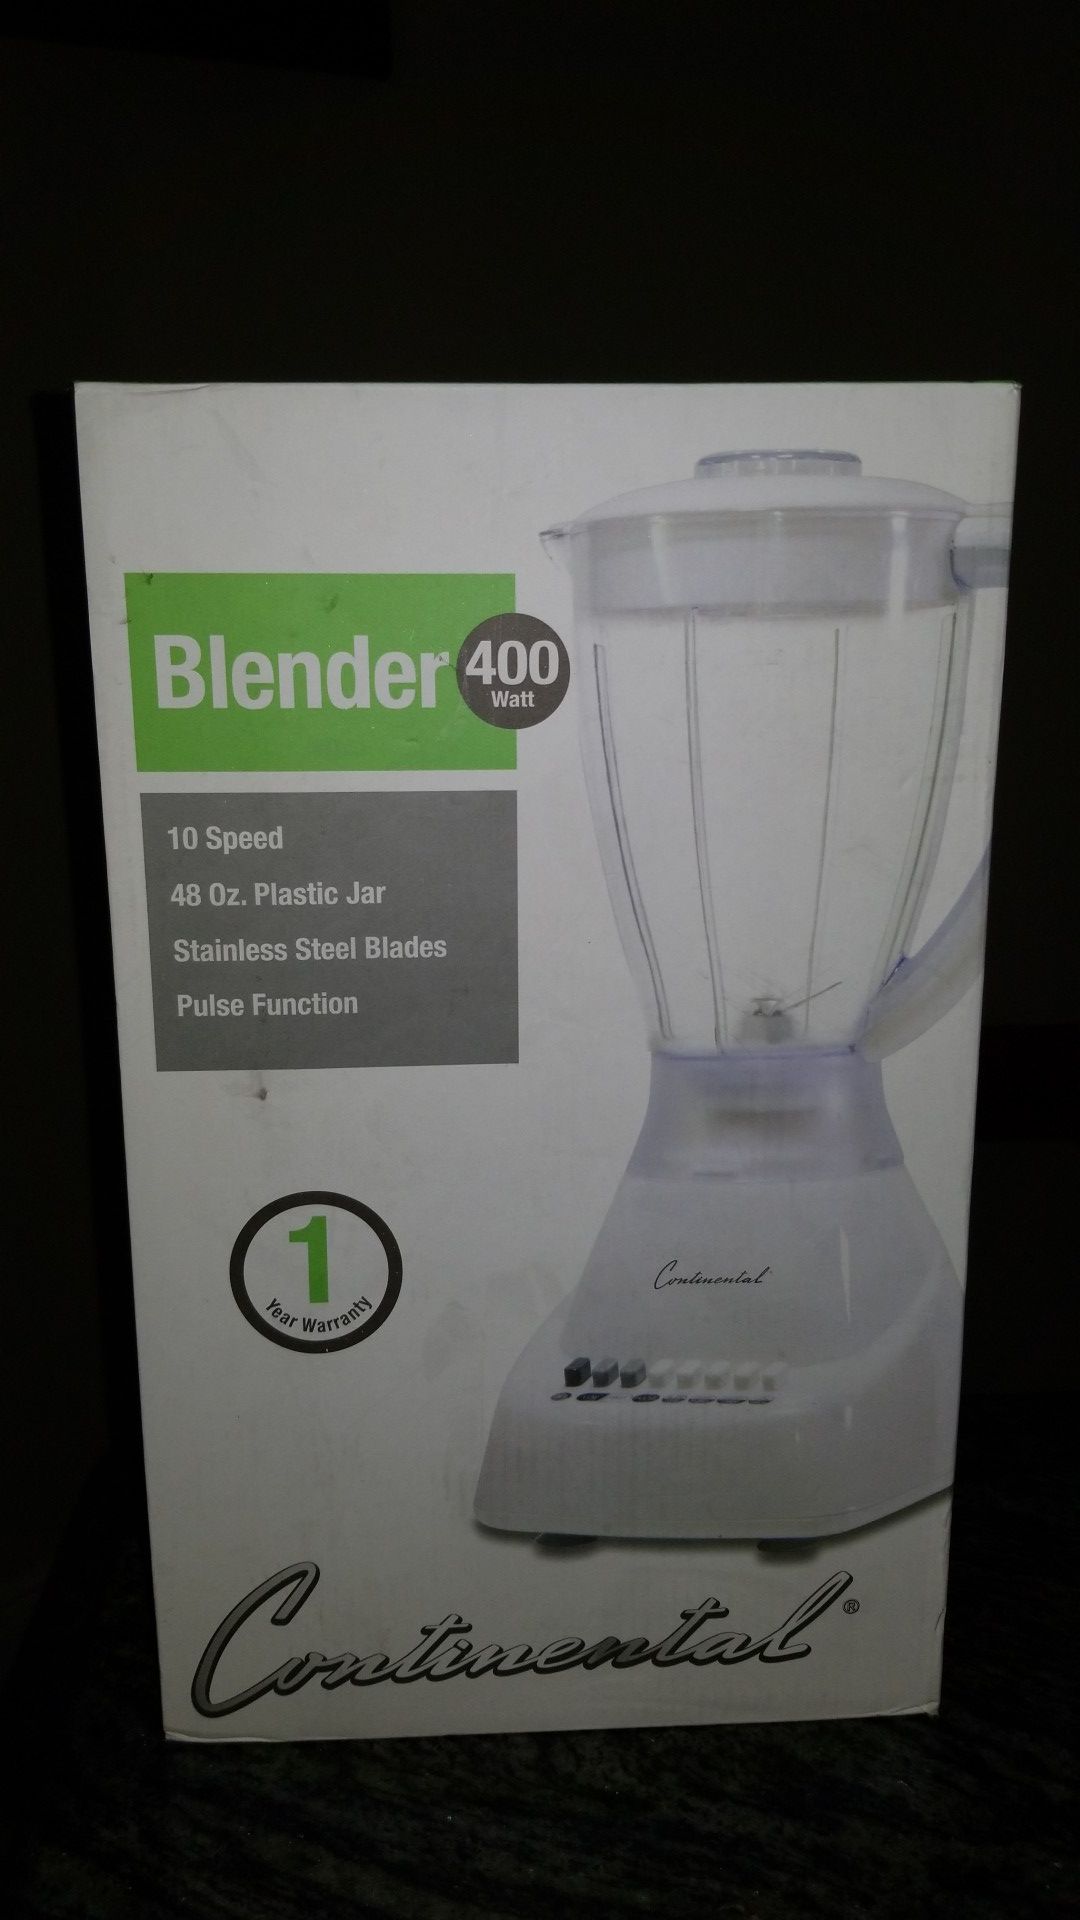 Brand new blender